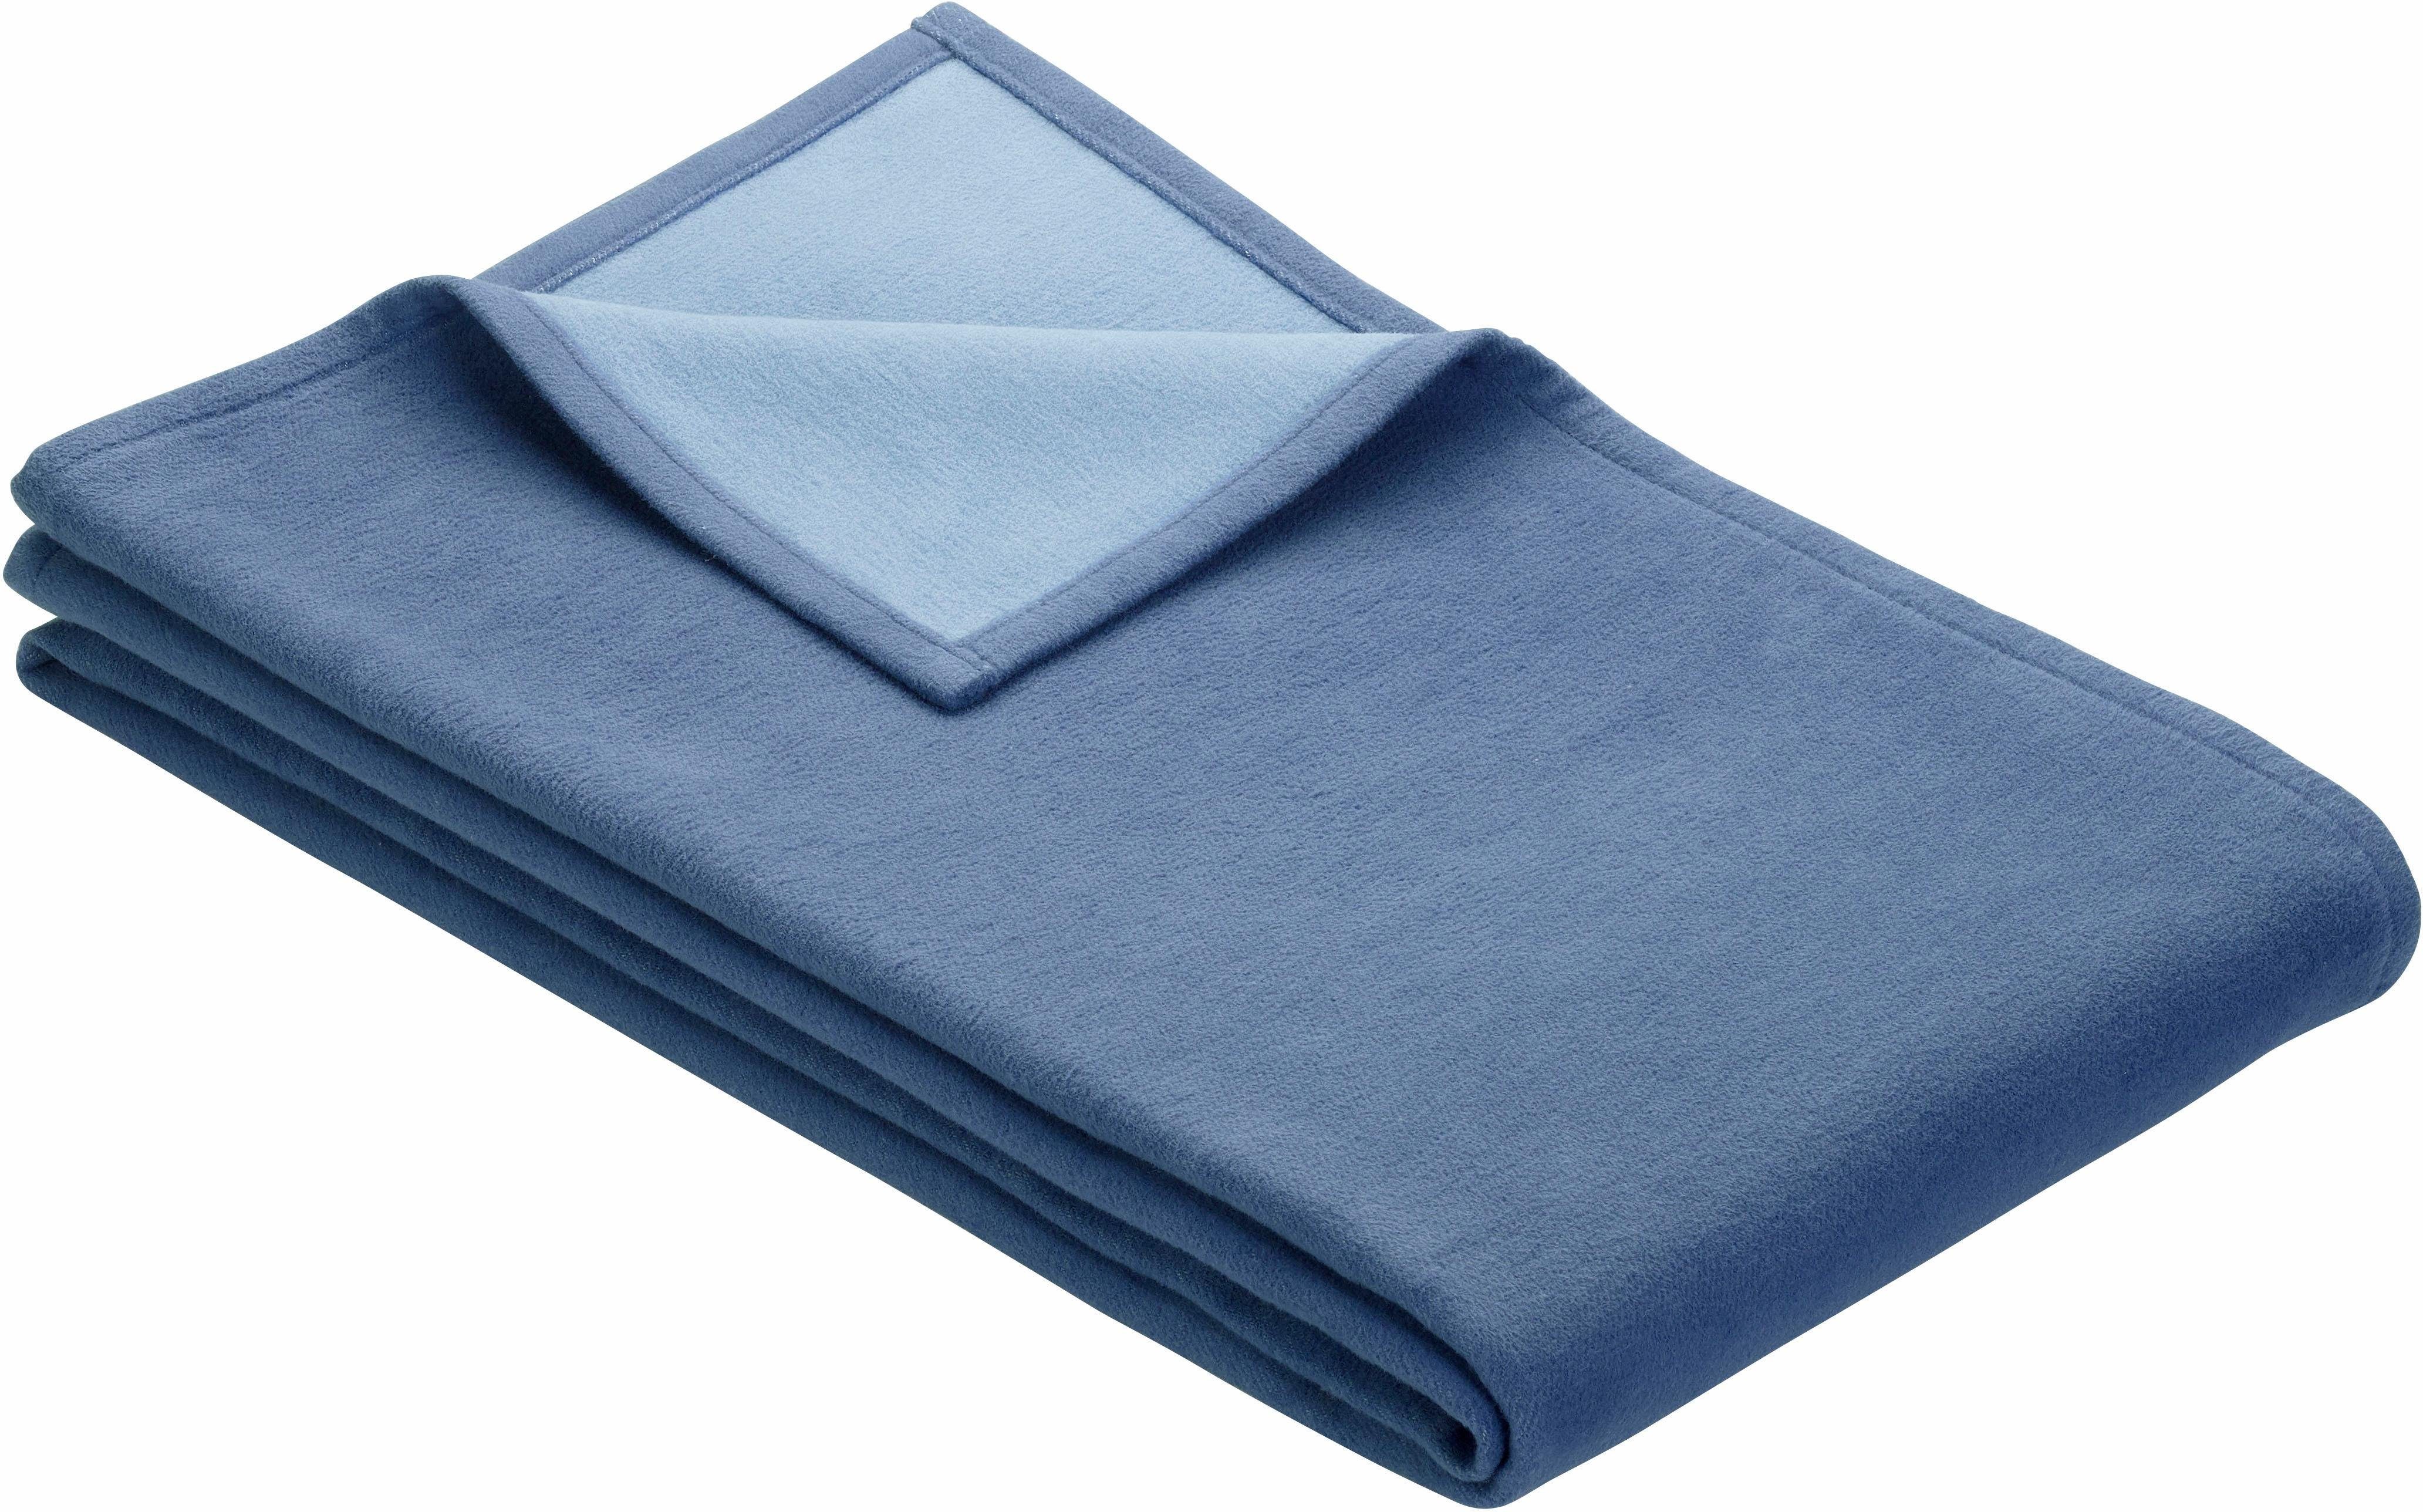 Wohndecke Cotton Pur, IBENA, in trendigen Farben blau